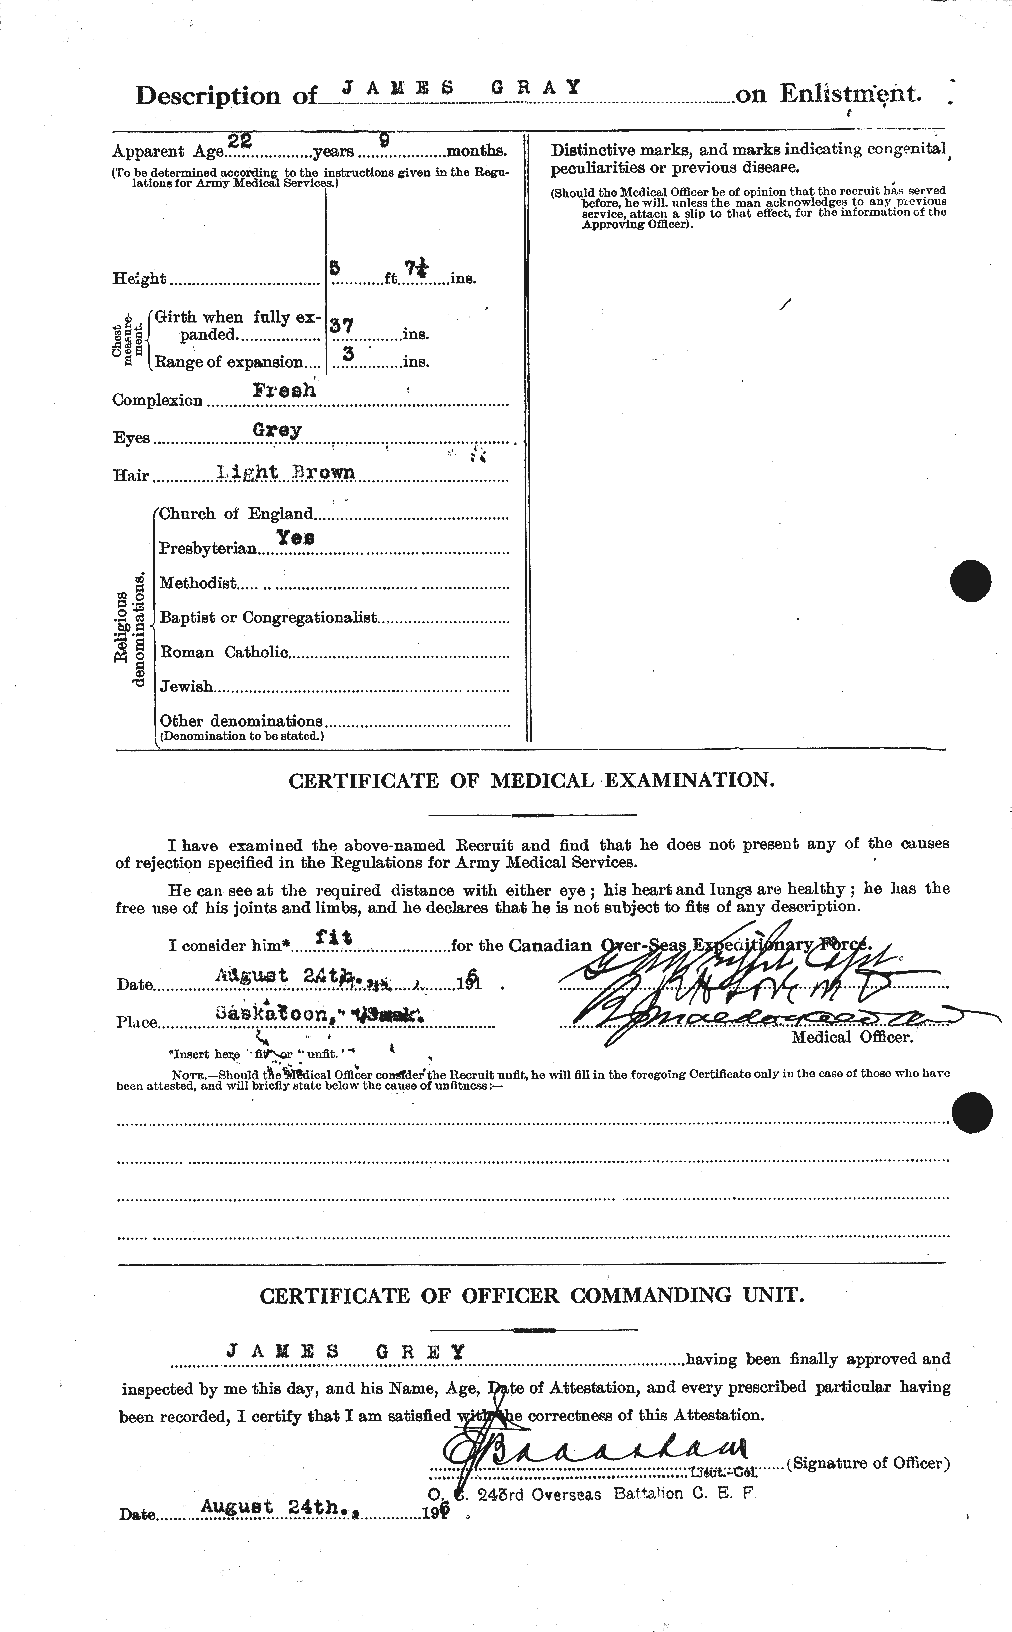 Dossiers du Personnel de la Première Guerre mondiale - CEC 363279b